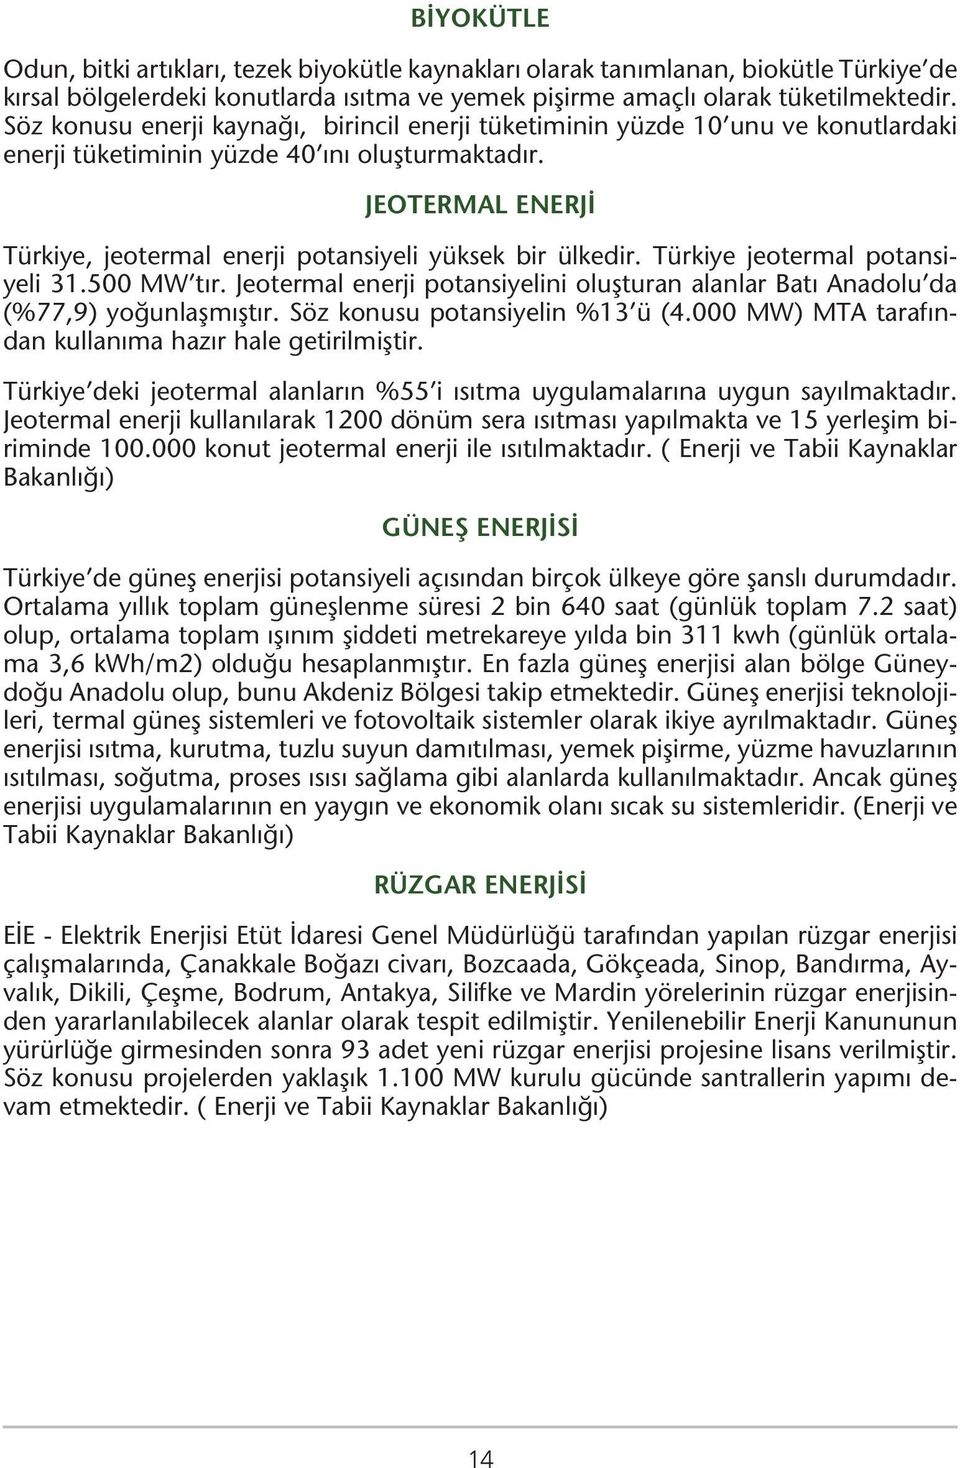 JEOTERMAL ENERJİ Türkiye, jeotermal enerji potansiyeli yüksek bir ülkedir. Türkiye jeotermal potansiyeli 31.500 MW tır.